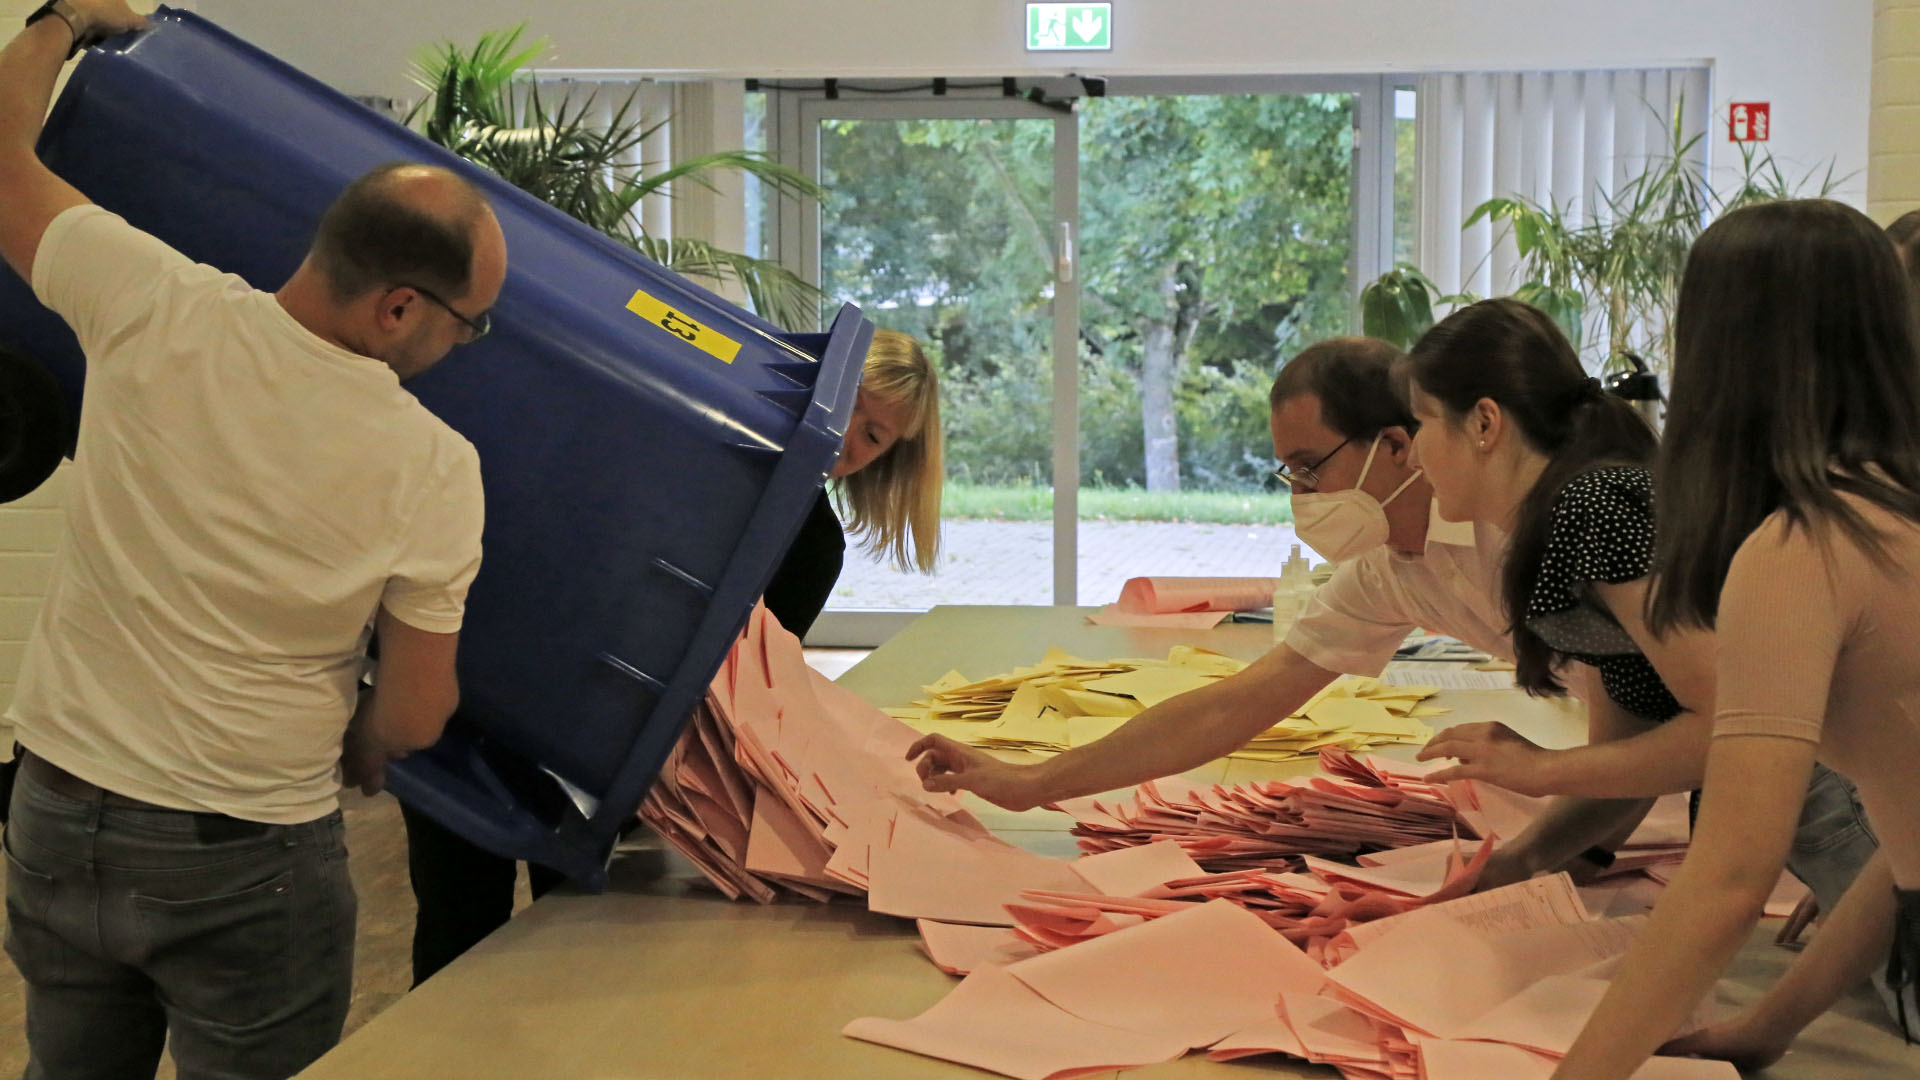 Zwei Personen schütten die Stimmzettel aus einer Wahlurne auf einen Tisch, weitere Personen auf der anderen Tischseite passen auf, dass nichts vom Tisch fällt.